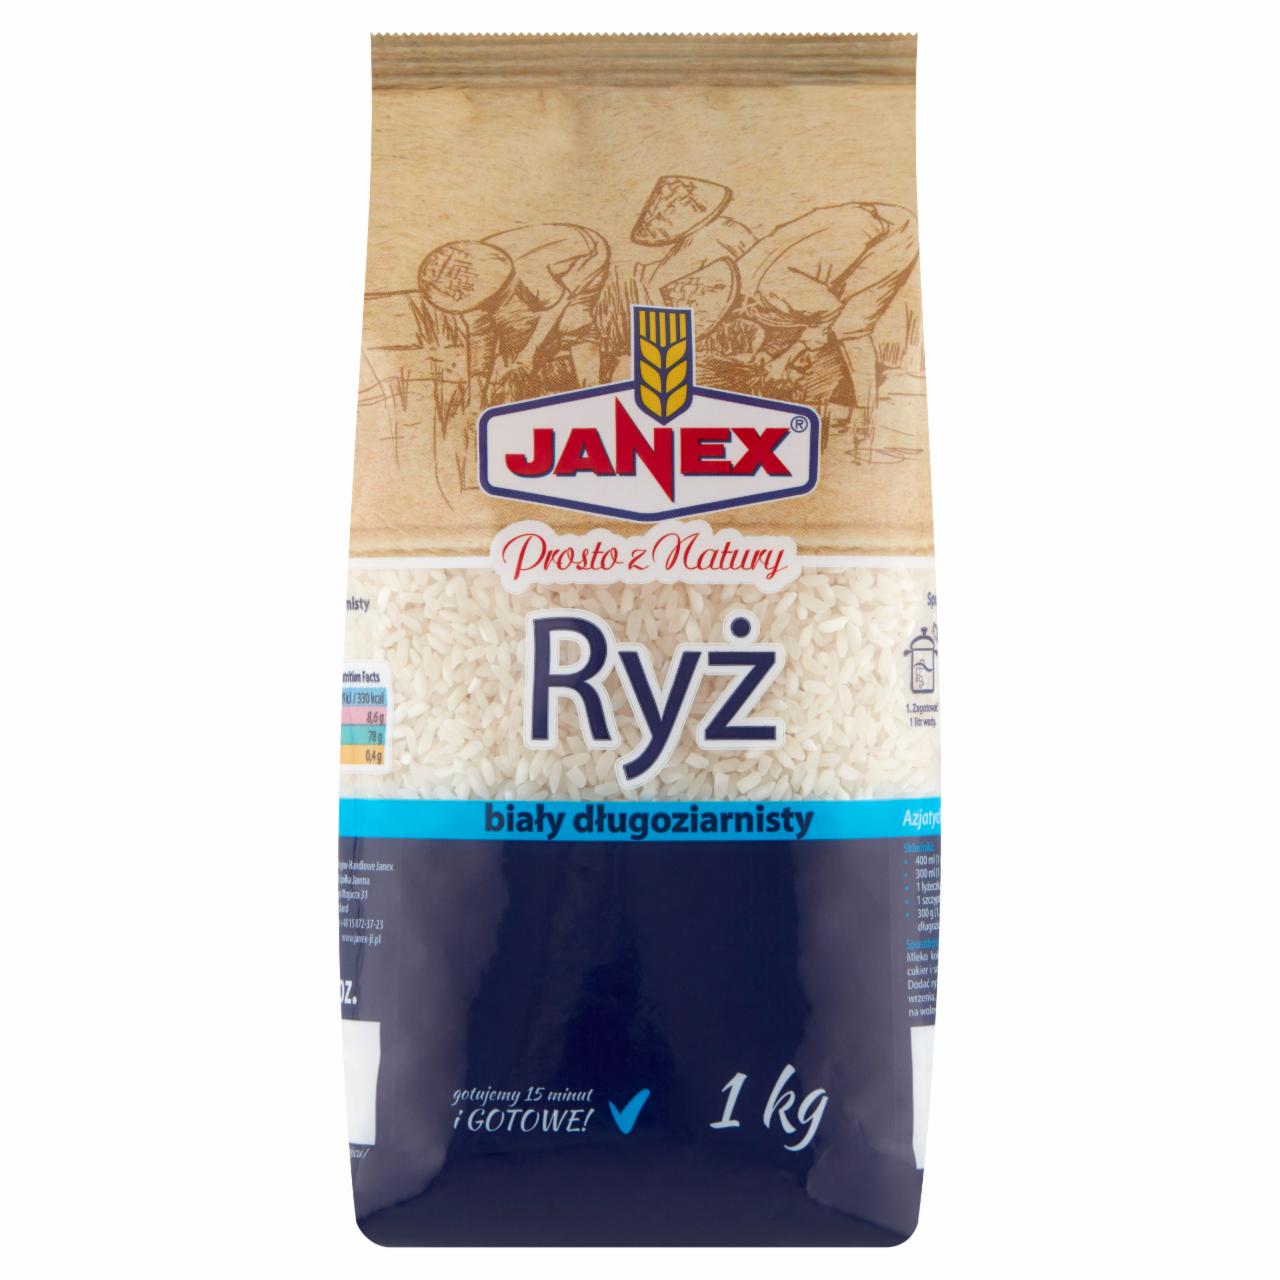 Zdjęcia - Janex Ryż biały długoziarnisty 1 kg